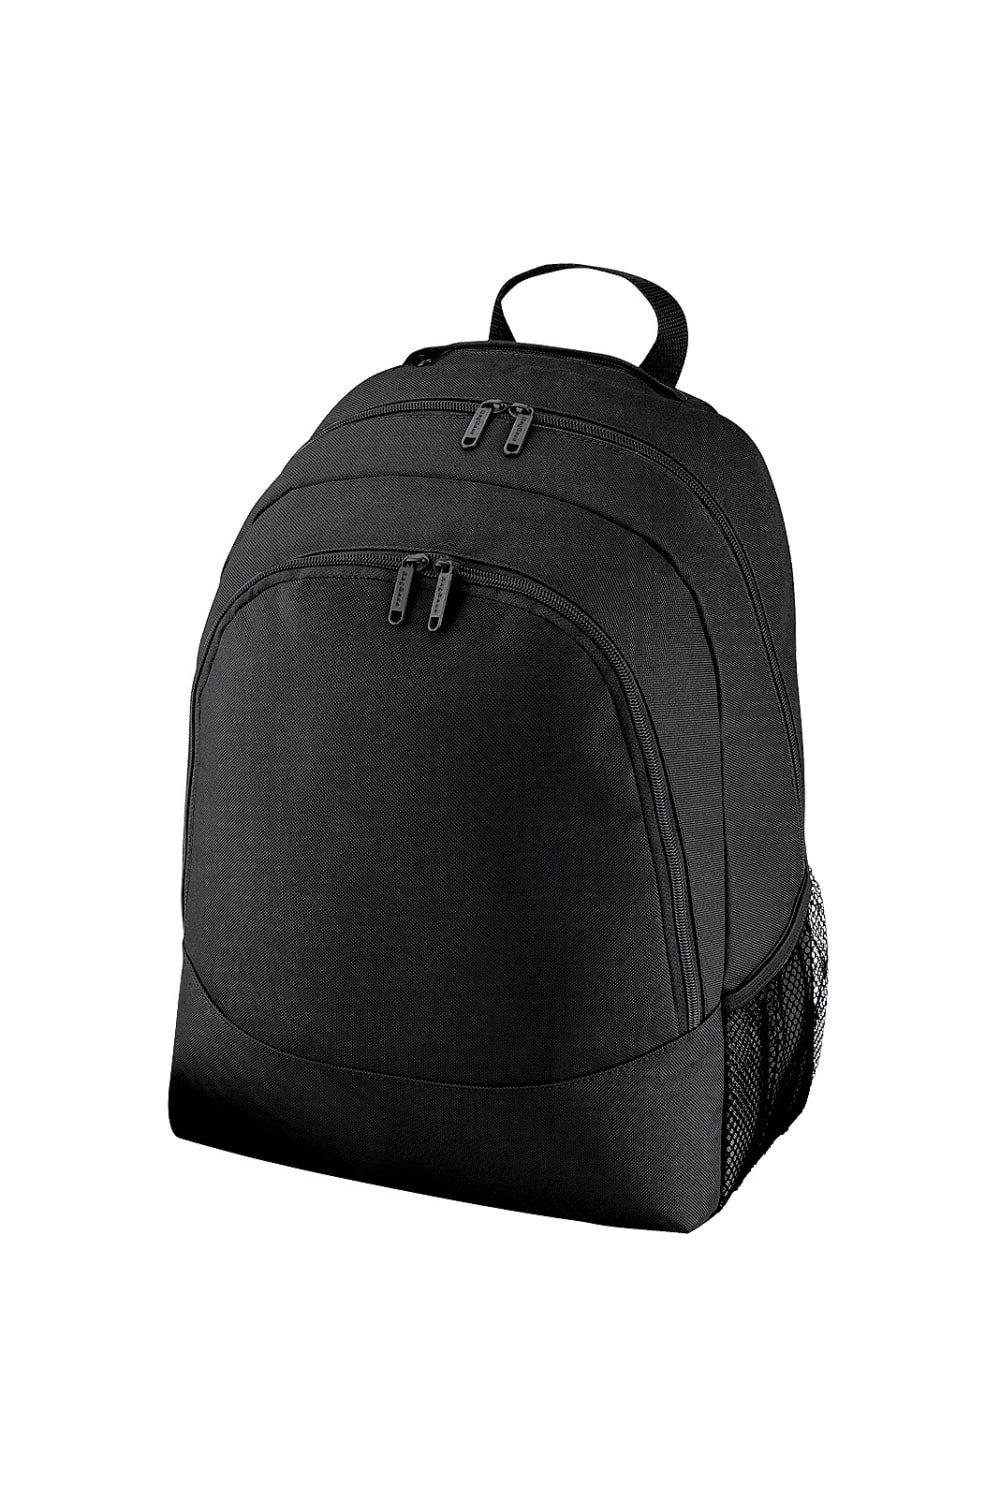 Универсальный многоцелевой рюкзак/рюкзак/сумка (18 литров) (2 шт. в упаковке) Bagbase, черный чехол mypads toyota тойота 2 для tcl 20 5g задняя панель накладка бампер